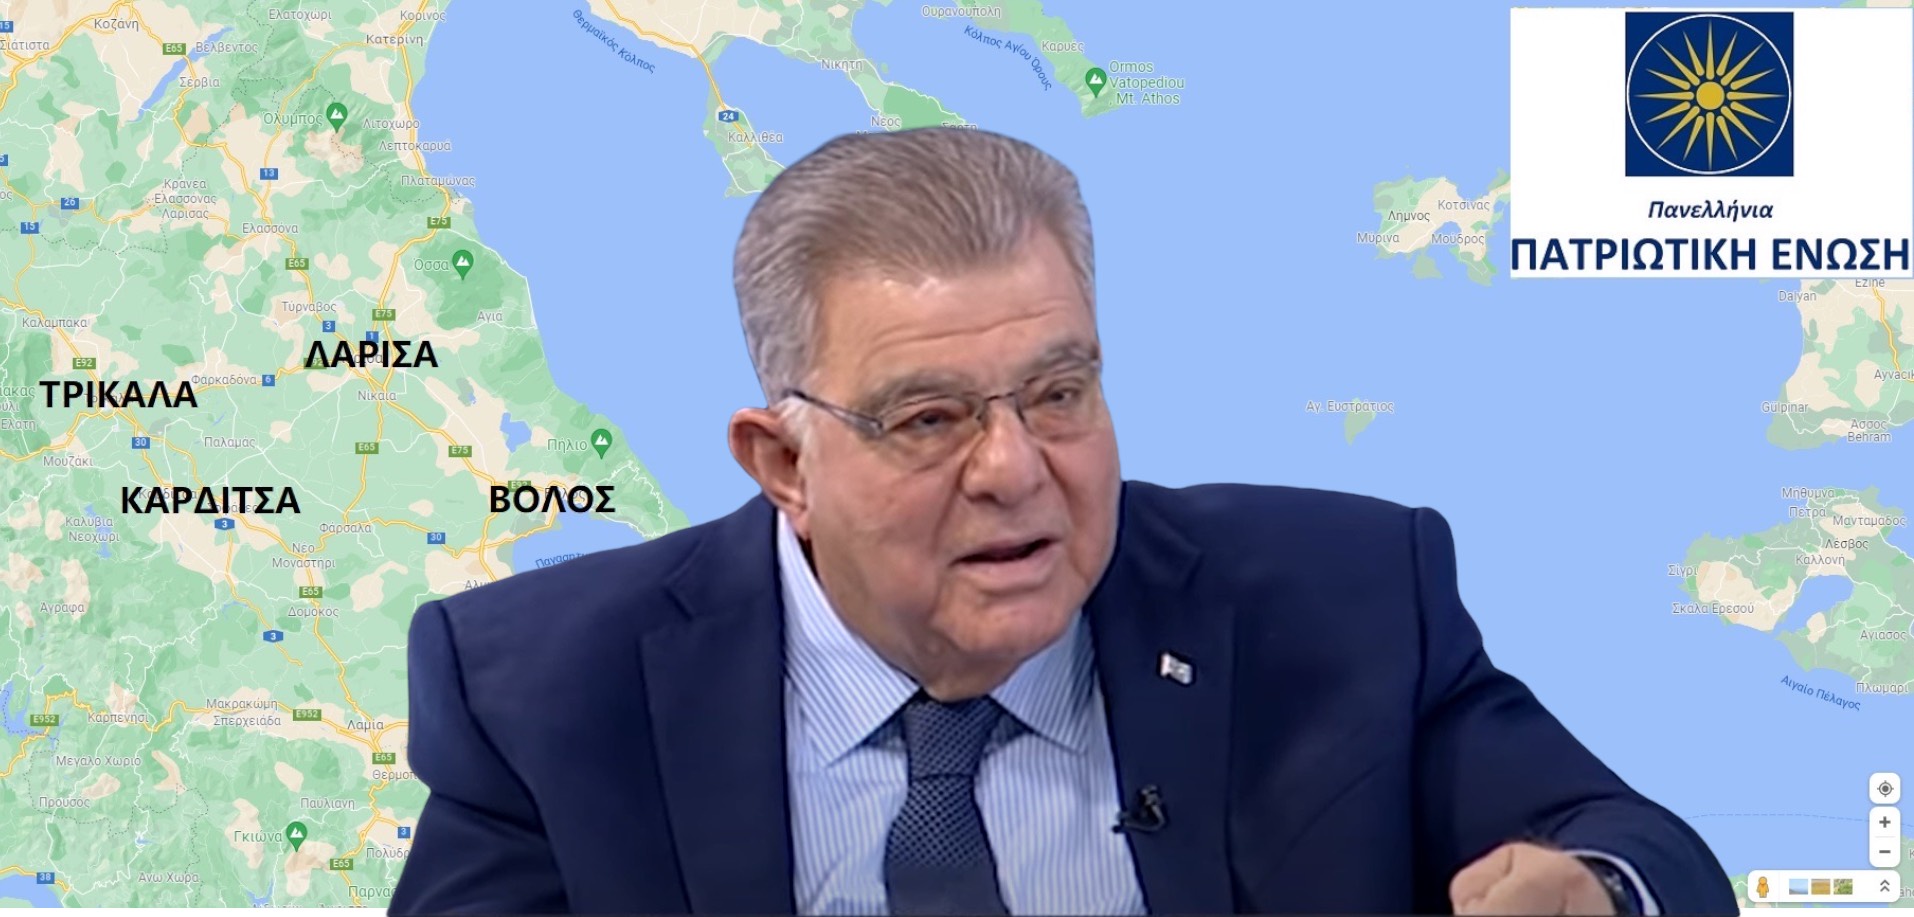 «Στην Ανατολική Μεσόγειο δεν υπάρχουν «κοινοί πόροι», αλλά δικαιώματα υφαλοκρηπίδας και ΑΟΖ»-Π.Εμφιετζόγλου